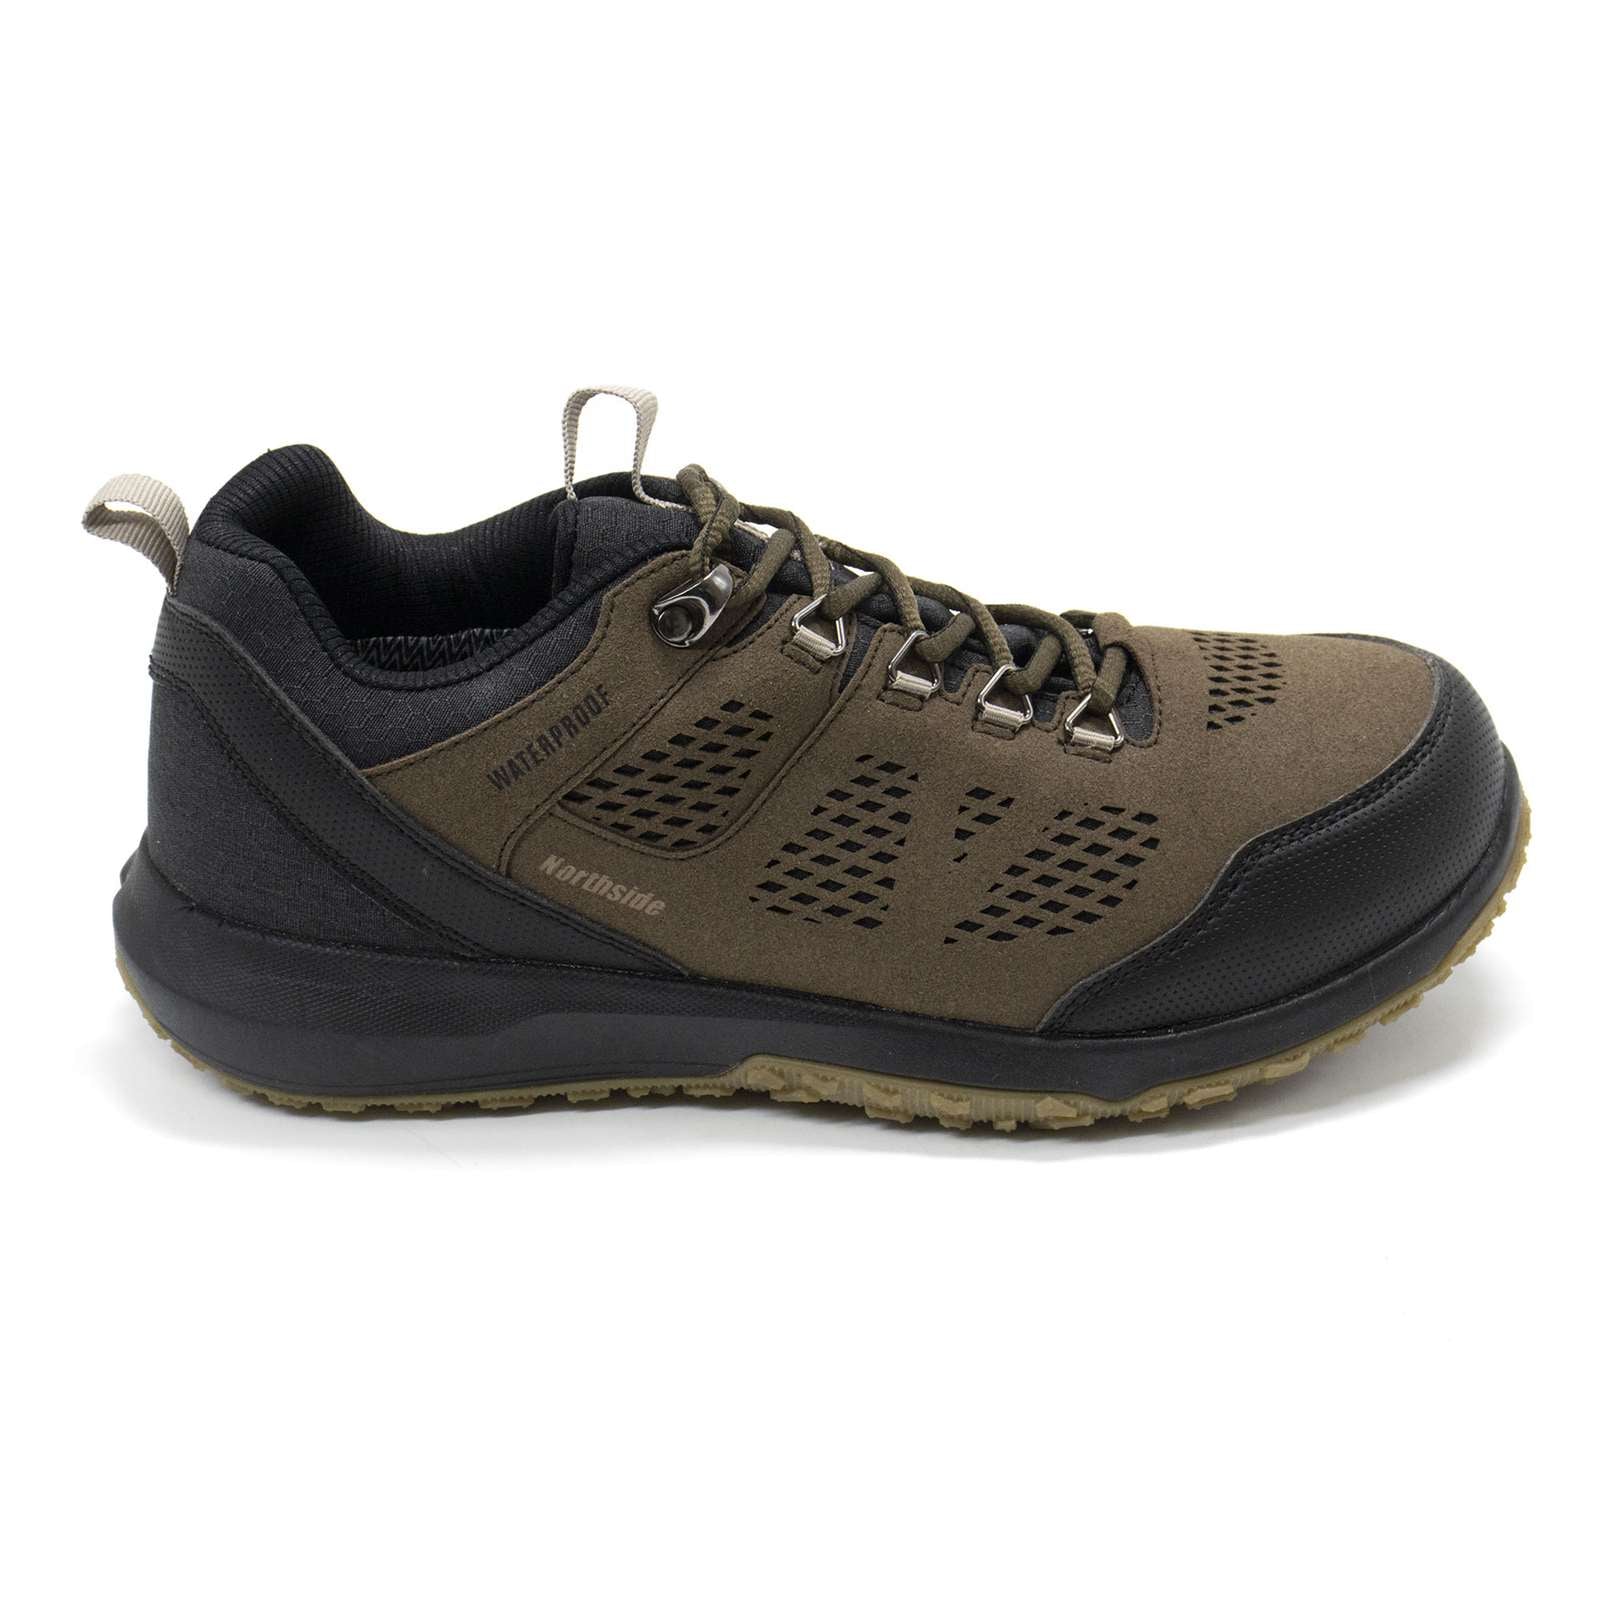 Northside Men Benton Waterproof Hiking Boots